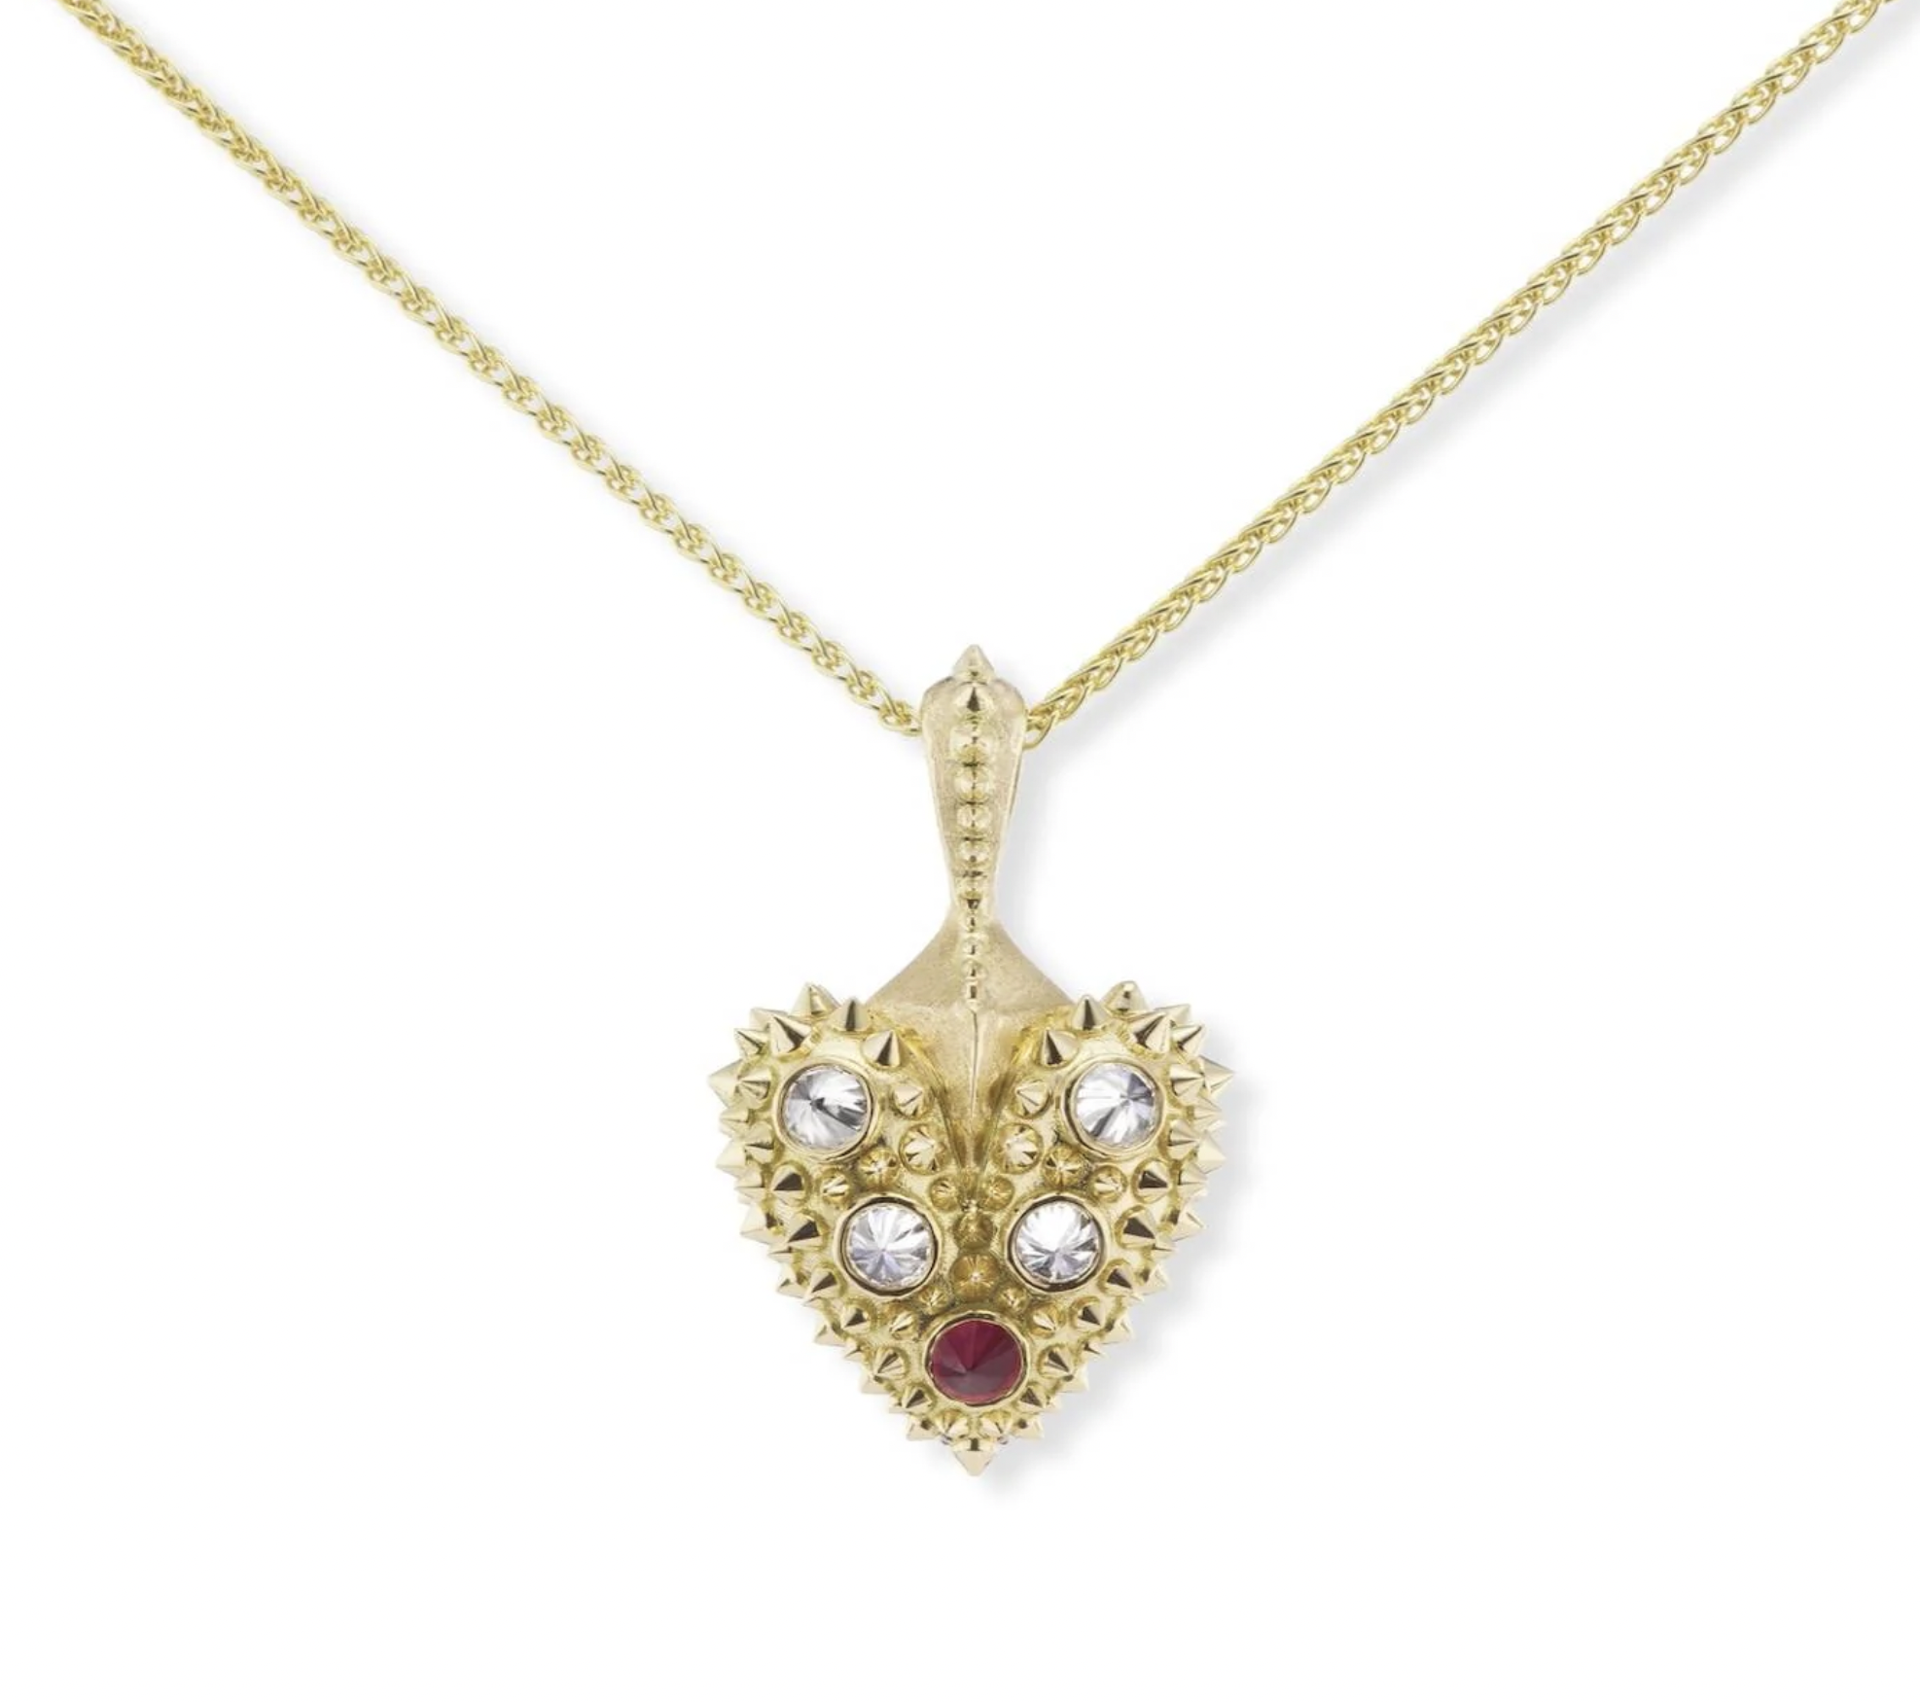 Pierce Your Heart Diamond Necklace by Ana Katarina